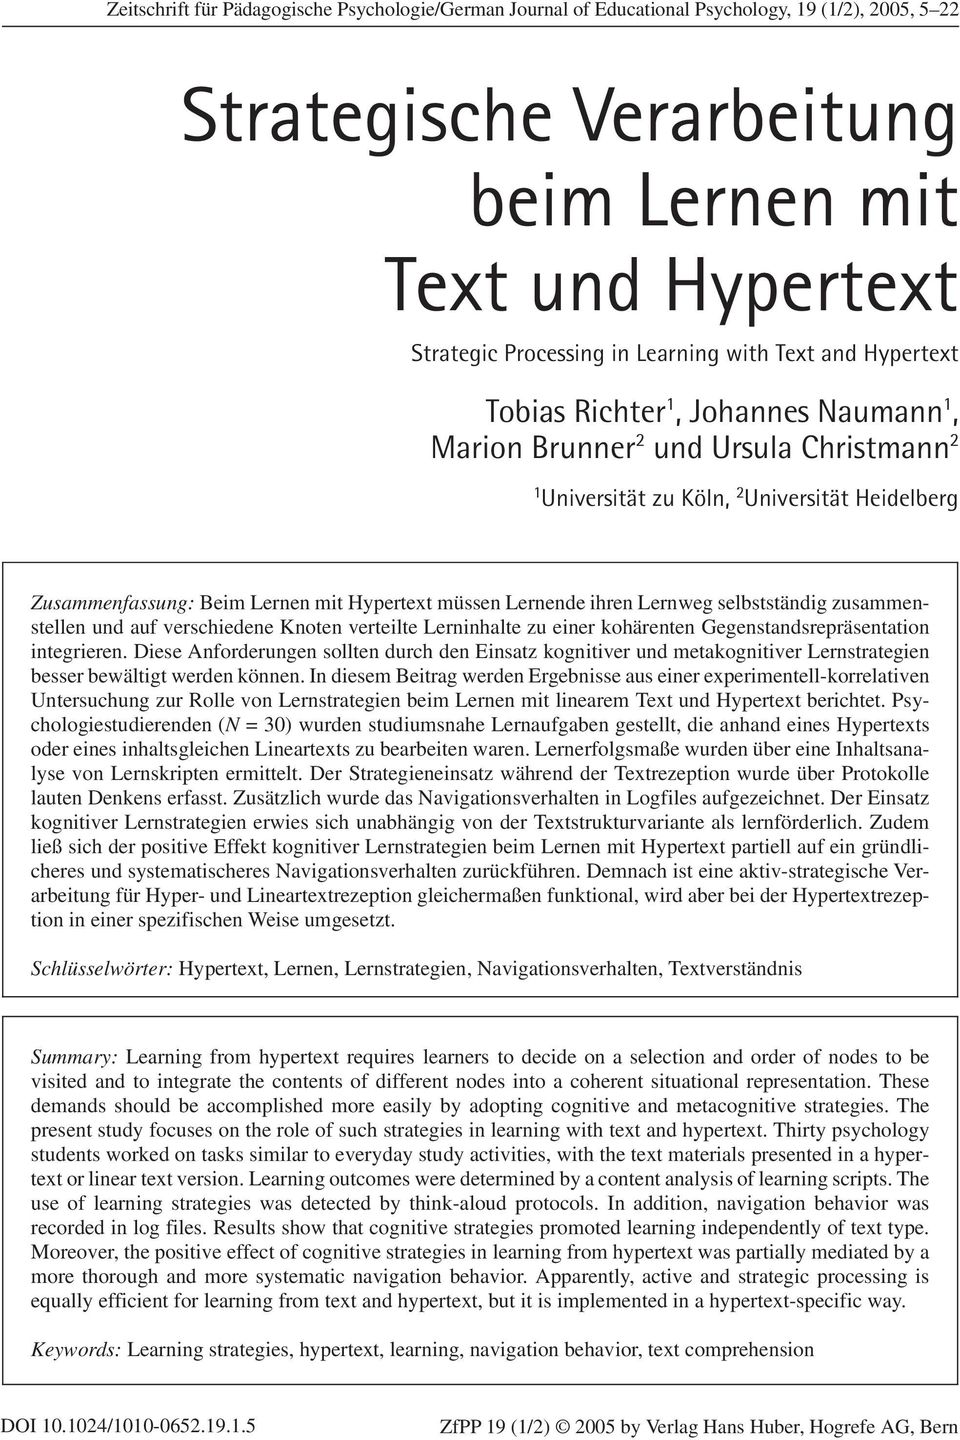 Strategic Processing in Learning with Text and Hypertext Tobias Richter 1, Johannes Naumann 1, Marion Brunner 2 und Ursula Christmann 2 1 Universität zu Köln, 2 Universität Heidelberg